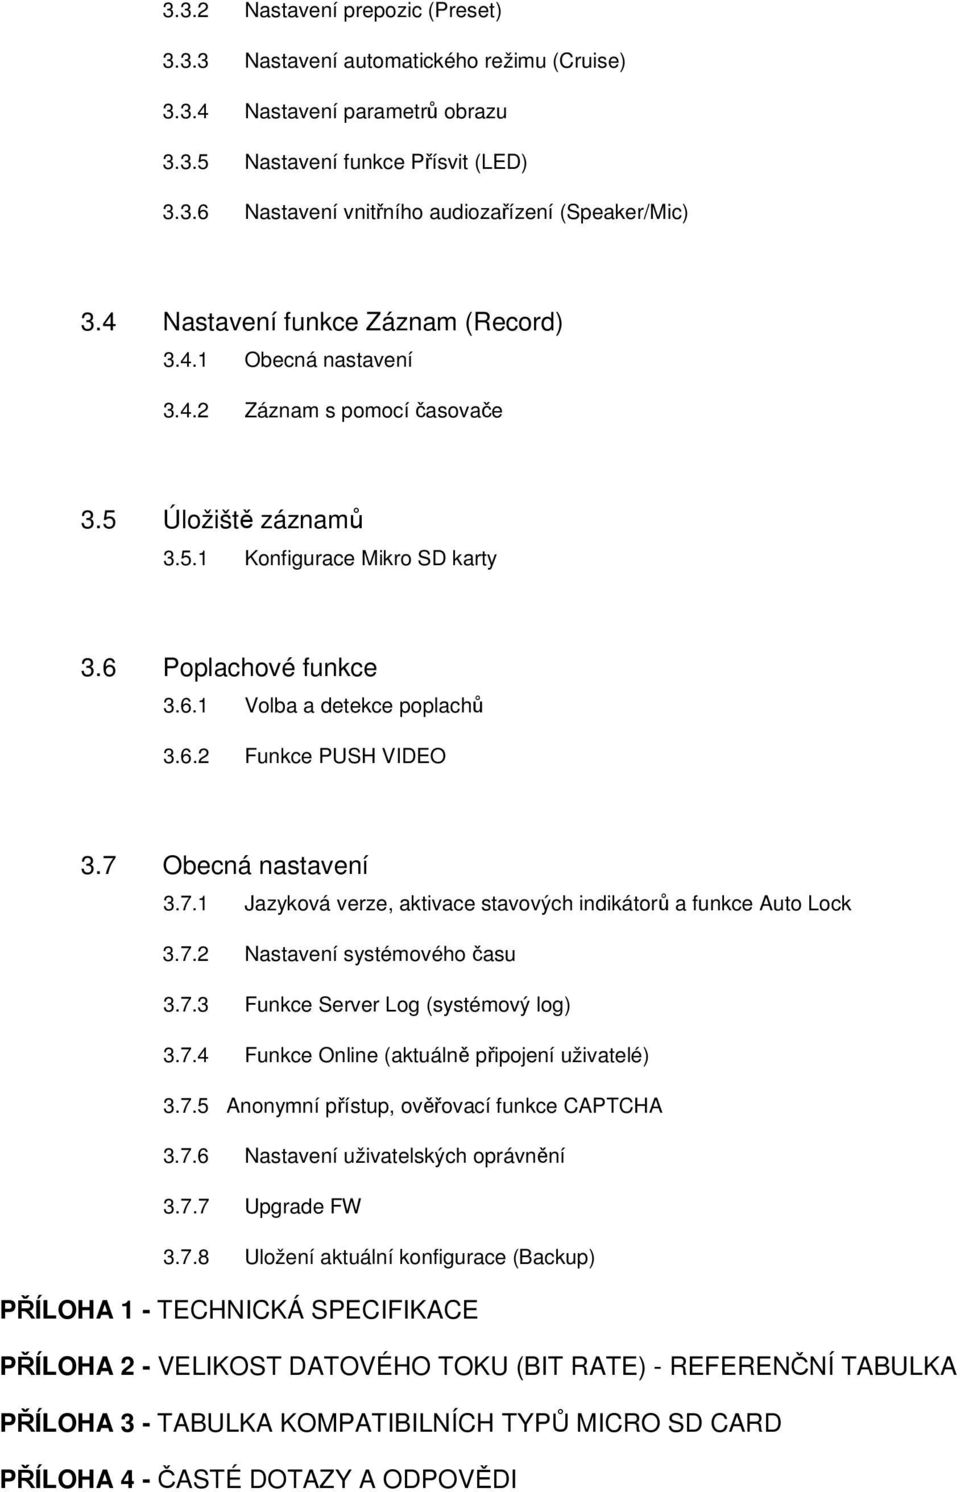 7 Obecná nastavení 3.7.1 Jazyková verze, aktivace stavových indikátorů a funkce Auto Lock 3.7.2 Nastavení systémového času 3.7.3 Funkce Server Log (systémový log) 3.7.4 Funkce Online (aktuálně připojení uživatelé) 3.